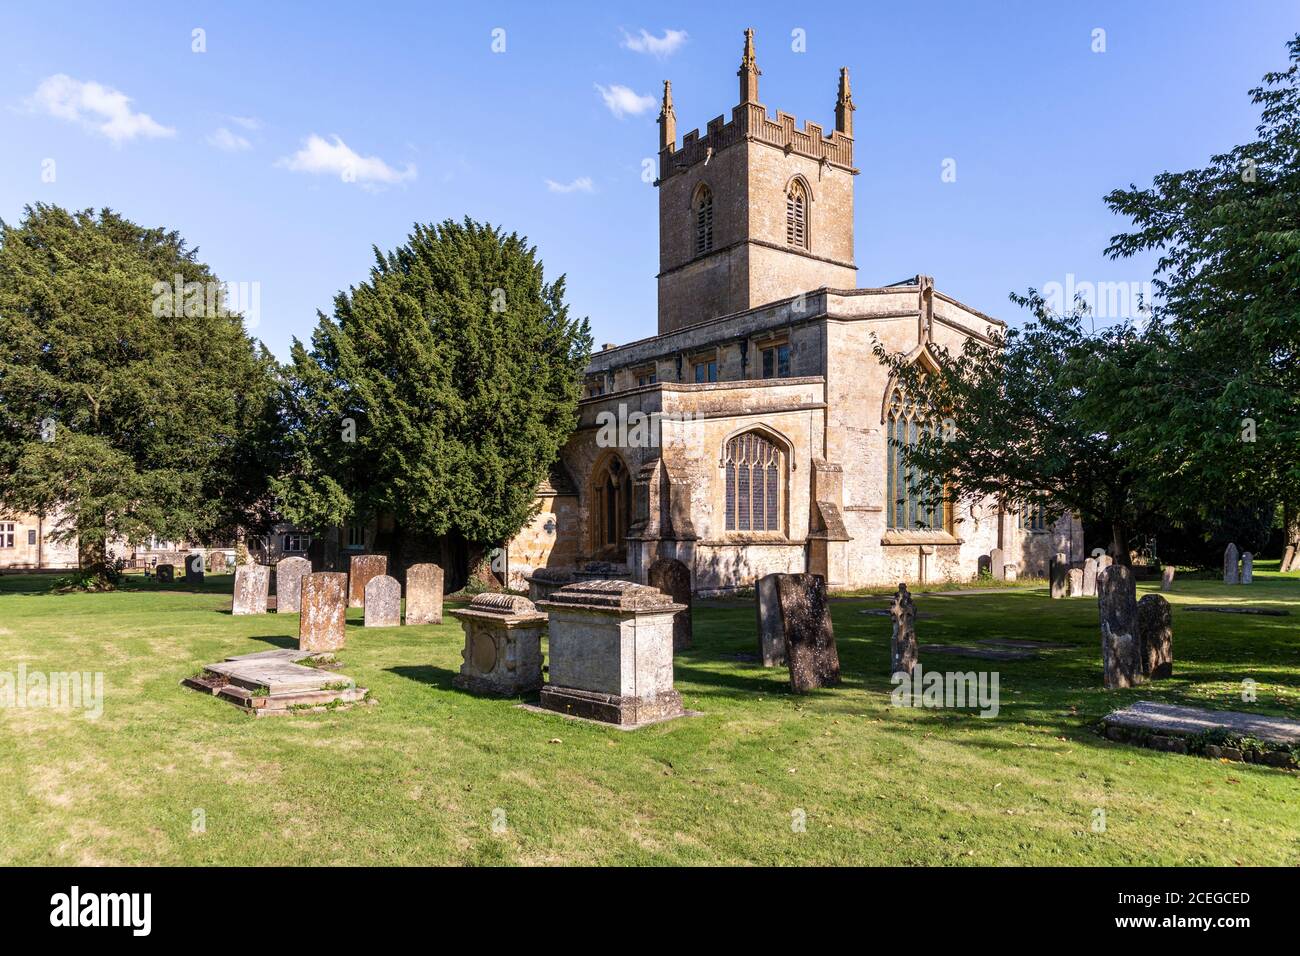 St. Edwards Kirche in der Cotswold Marktstadt Stow auf der Wold, Gloucestershire Großbritannien Stockfoto